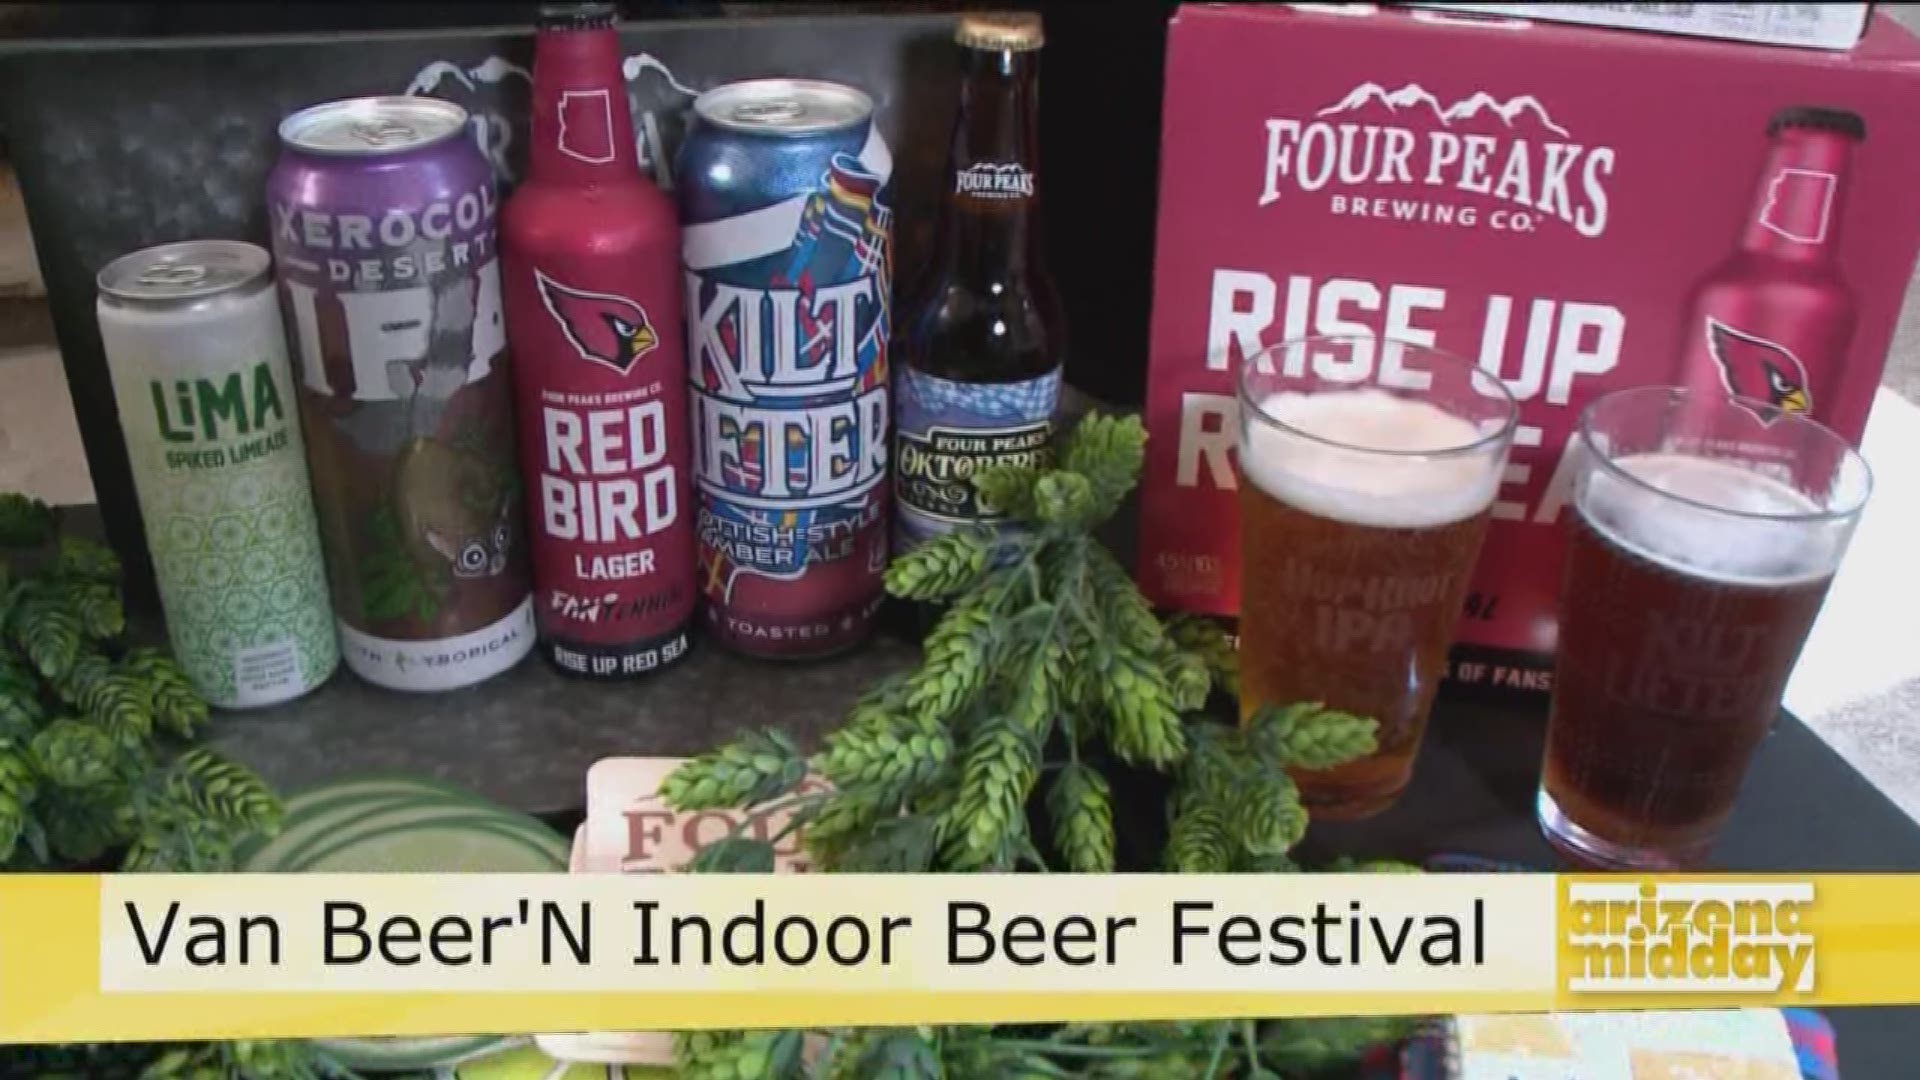 Jessica Hill from The Van Buren is giving us the scoop on the Van Beer 'N Indoor Beer Festival happening this weekend